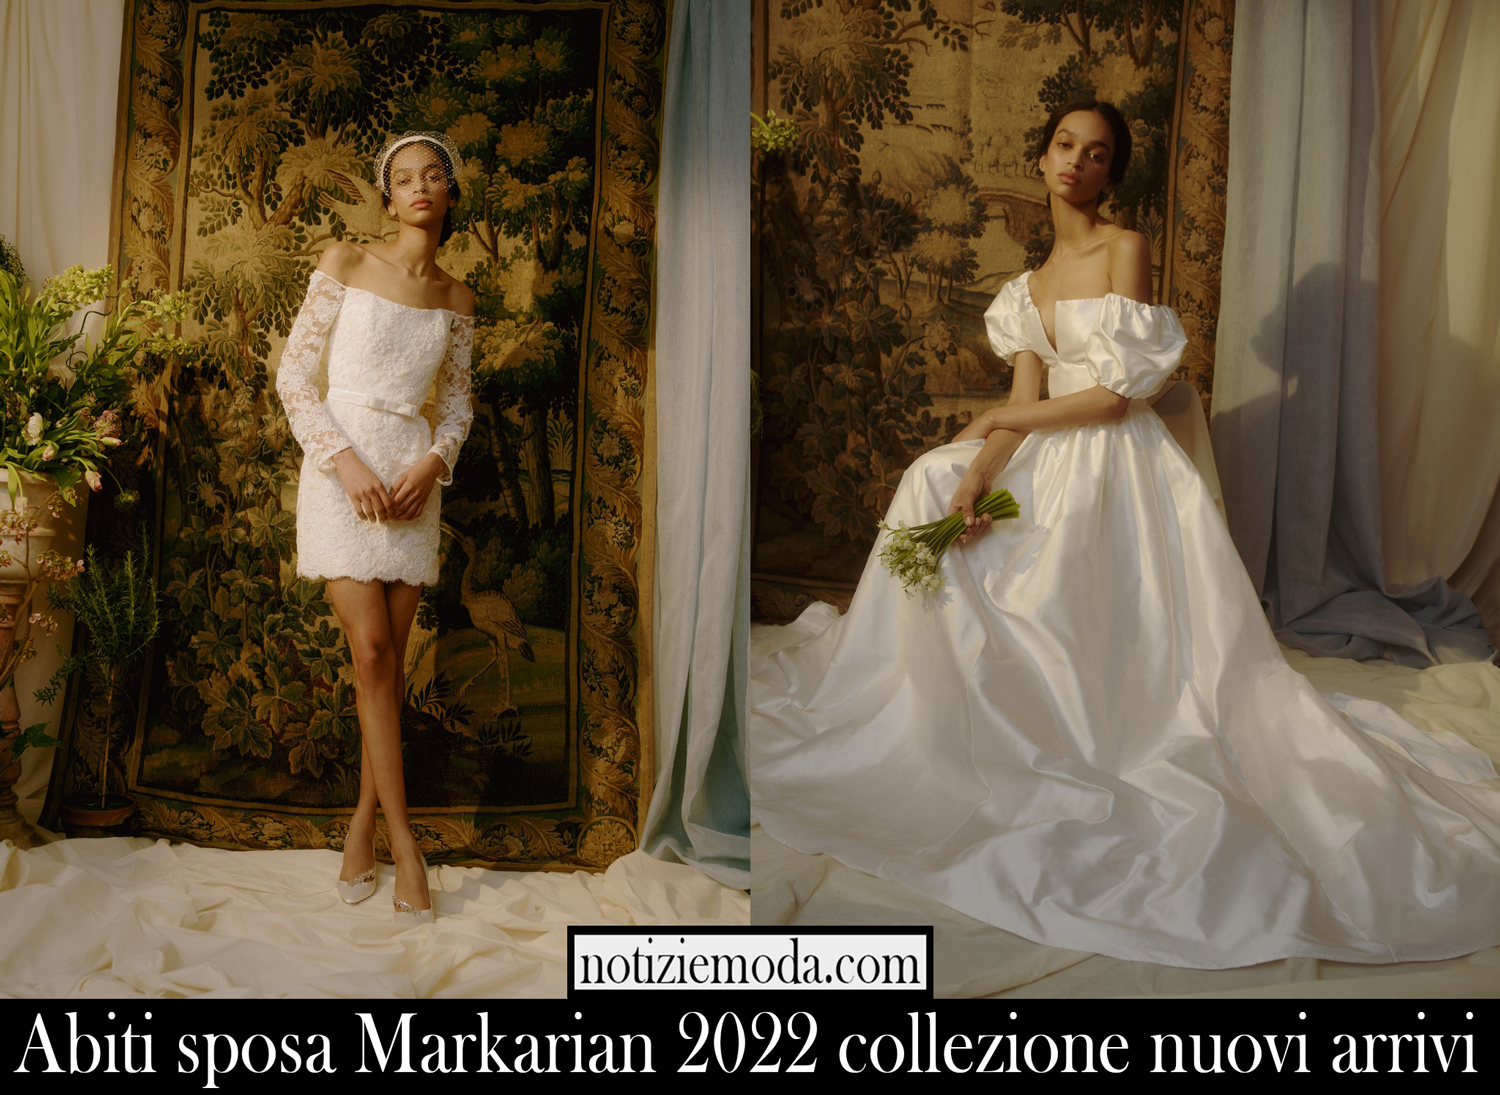 Abiti sposa Markarian 2022 collezione nuovi arrivi